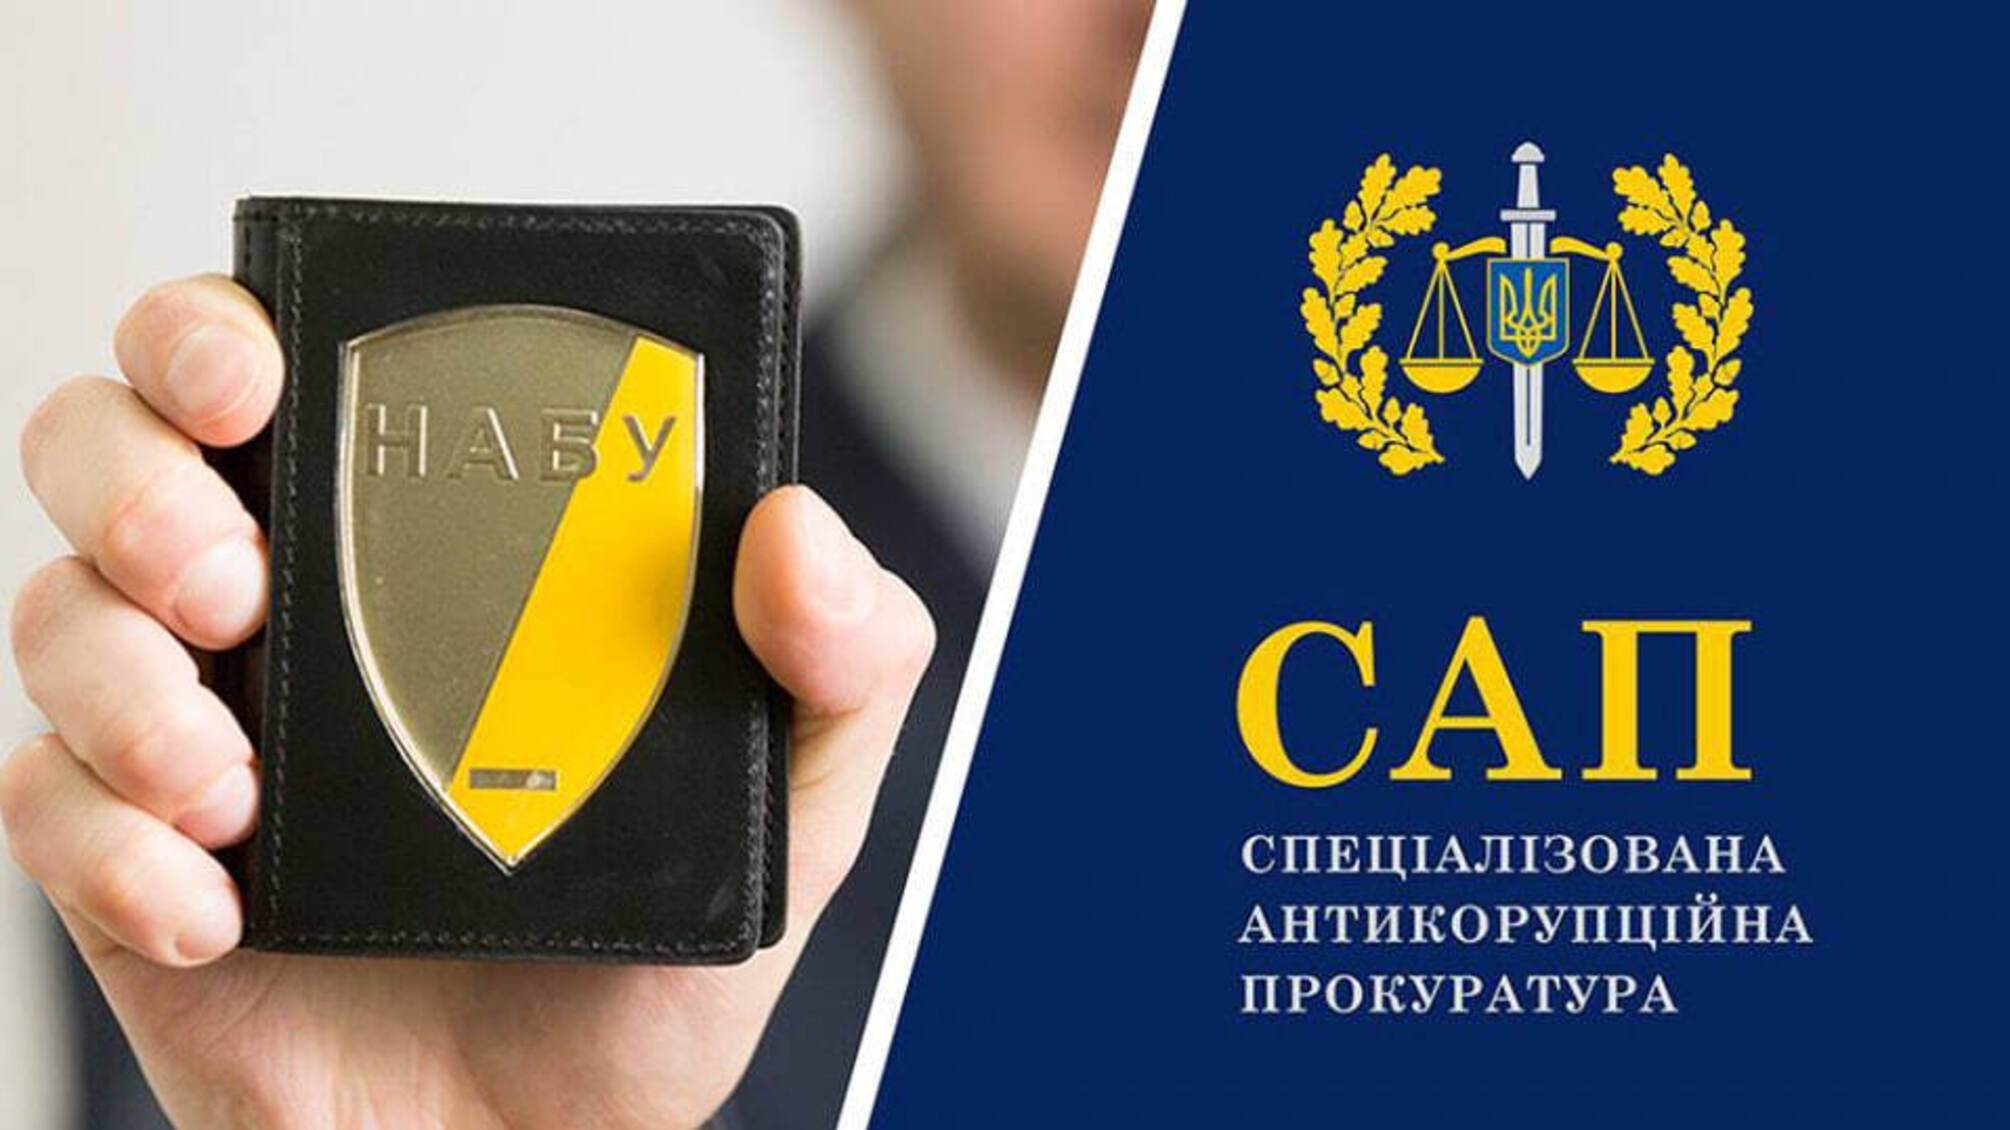 Подделал документы на 1,2 млн грн: в суд направлено дело в отношении экс-заместителя прокурора Львовщины